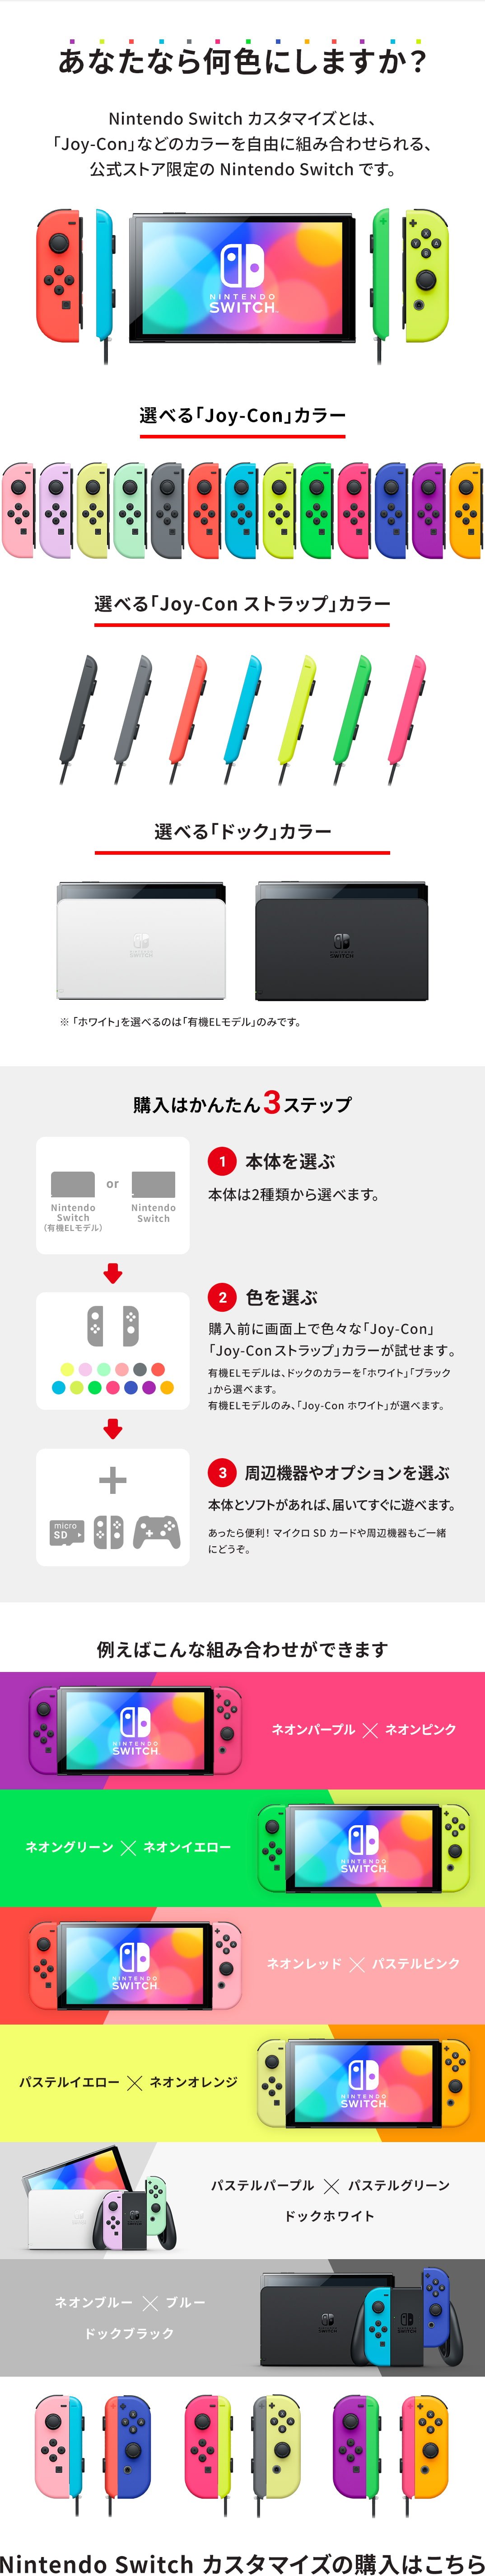 任天堂 Nintendo Switch マイニンテンドー限定カスタマイズモデル